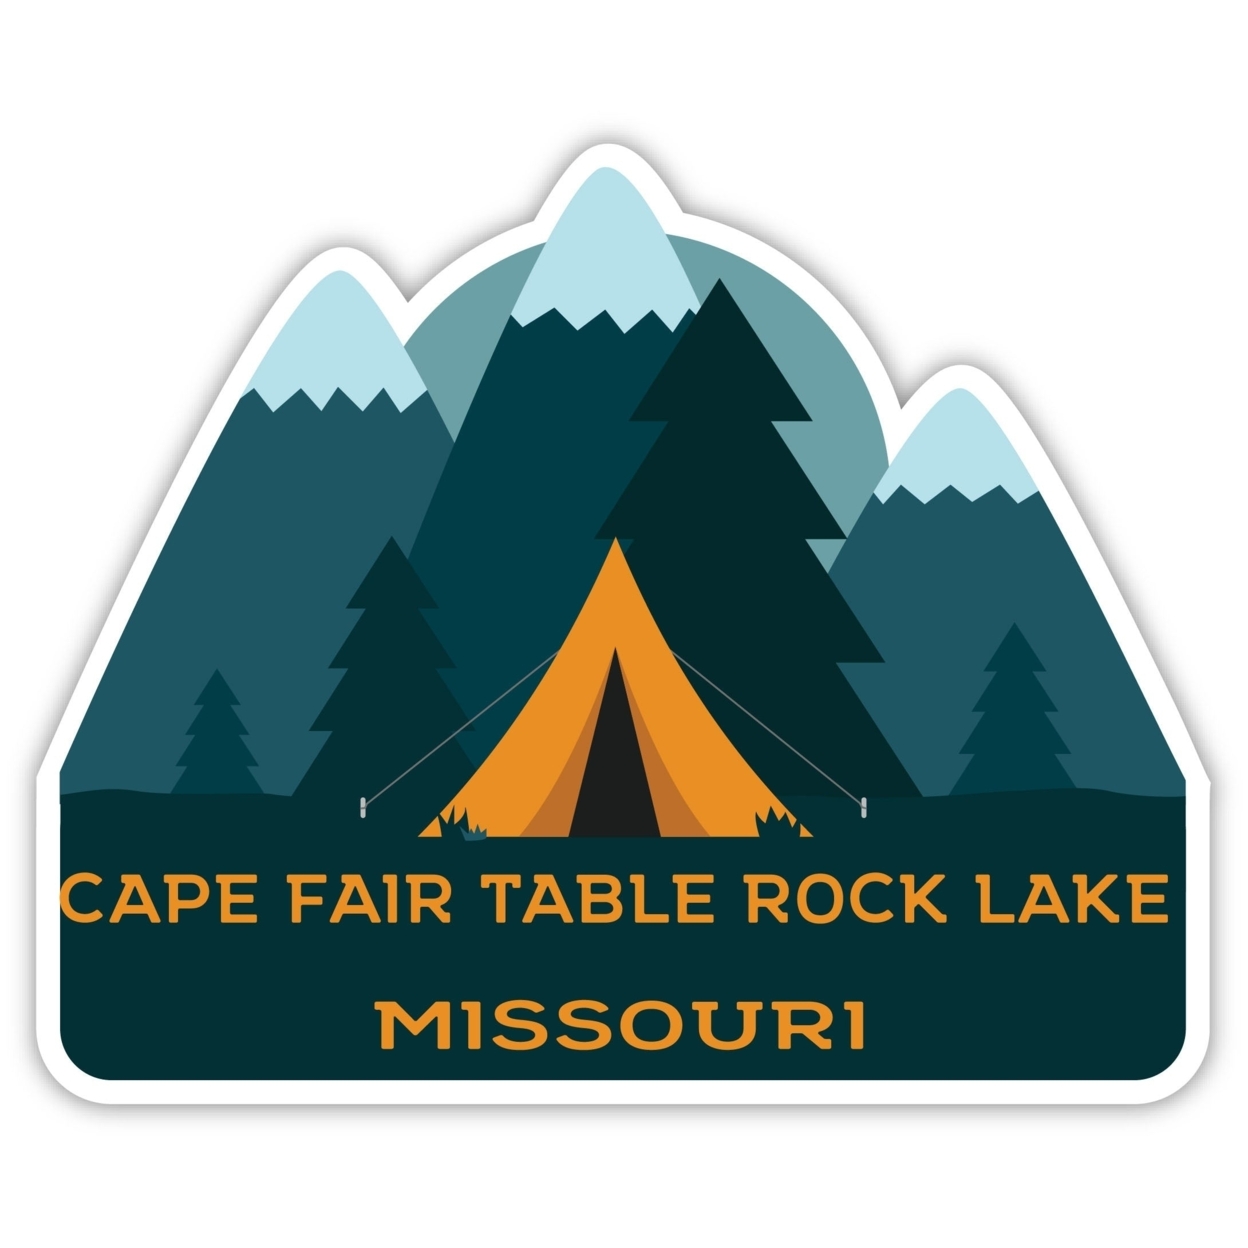 Cape Fair Table Rock Lake Missouri Souvenir Decorative Stickers (Choose Theme And Size) - Single Unit, 10-Inch, Tent